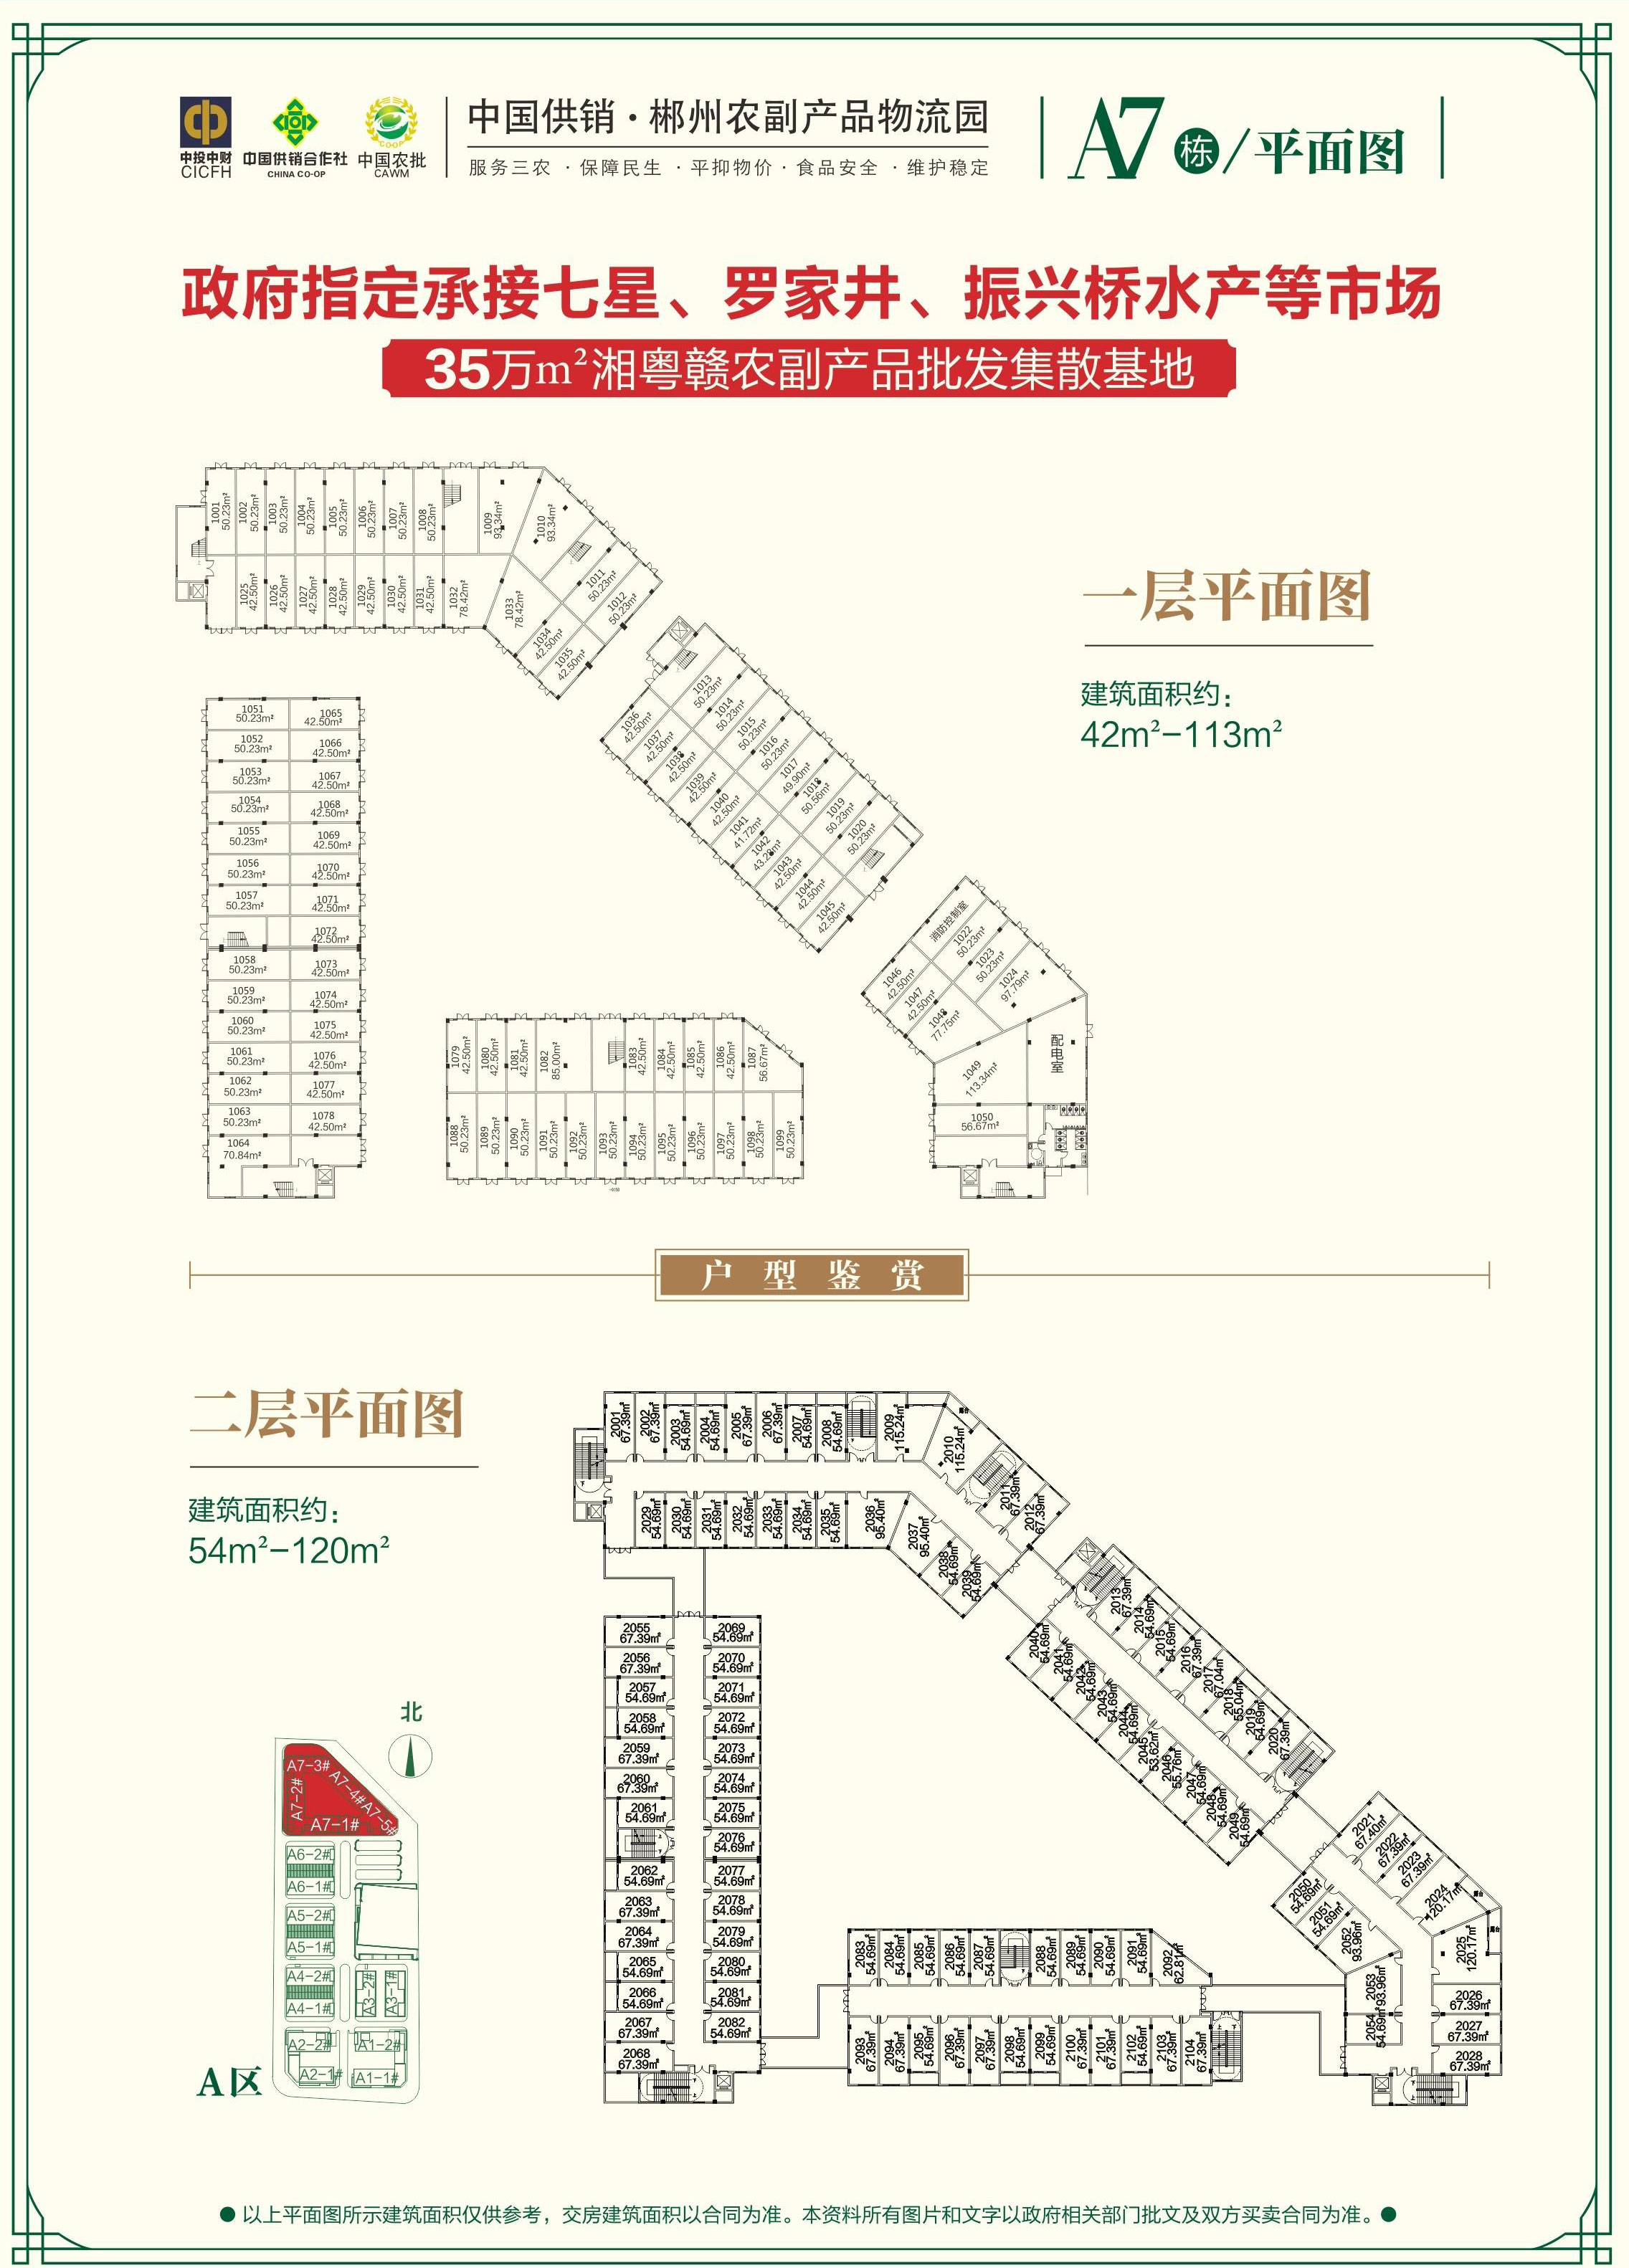 郴州北湖区农副产品物流园为您提供A7栋平面图片详情鉴赏